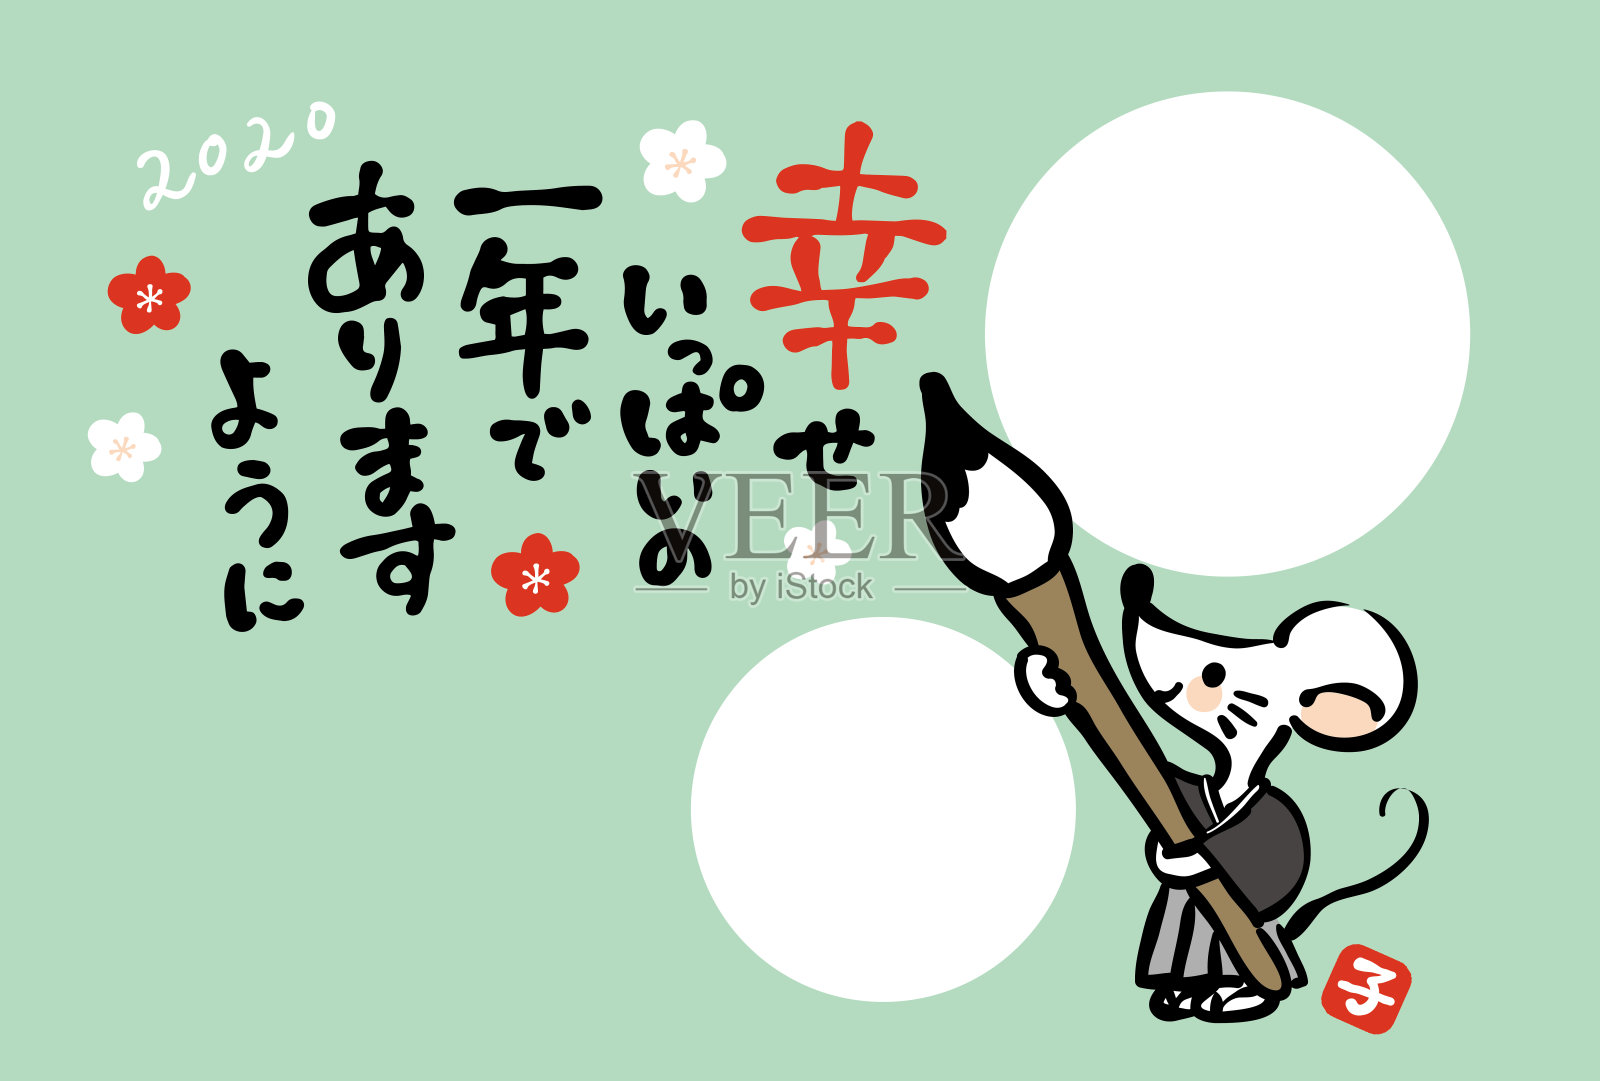 这是一个日本新年贺卡的相框。它是用日语写的“让我们有一个有趣的一年。2020”。插画图片素材